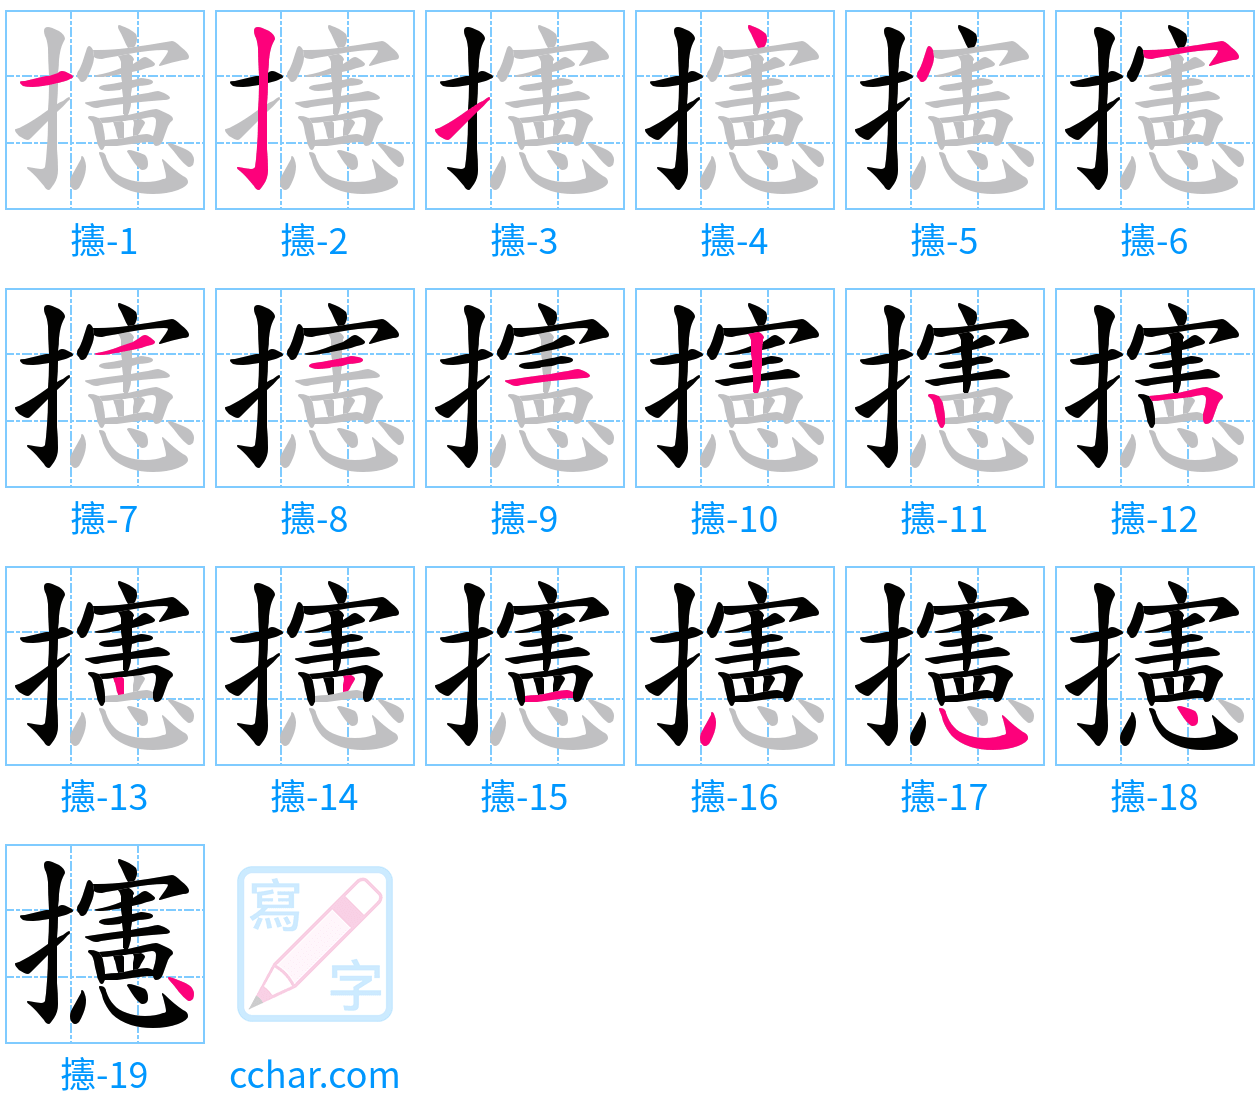 攇 stroke order step-by-step diagram